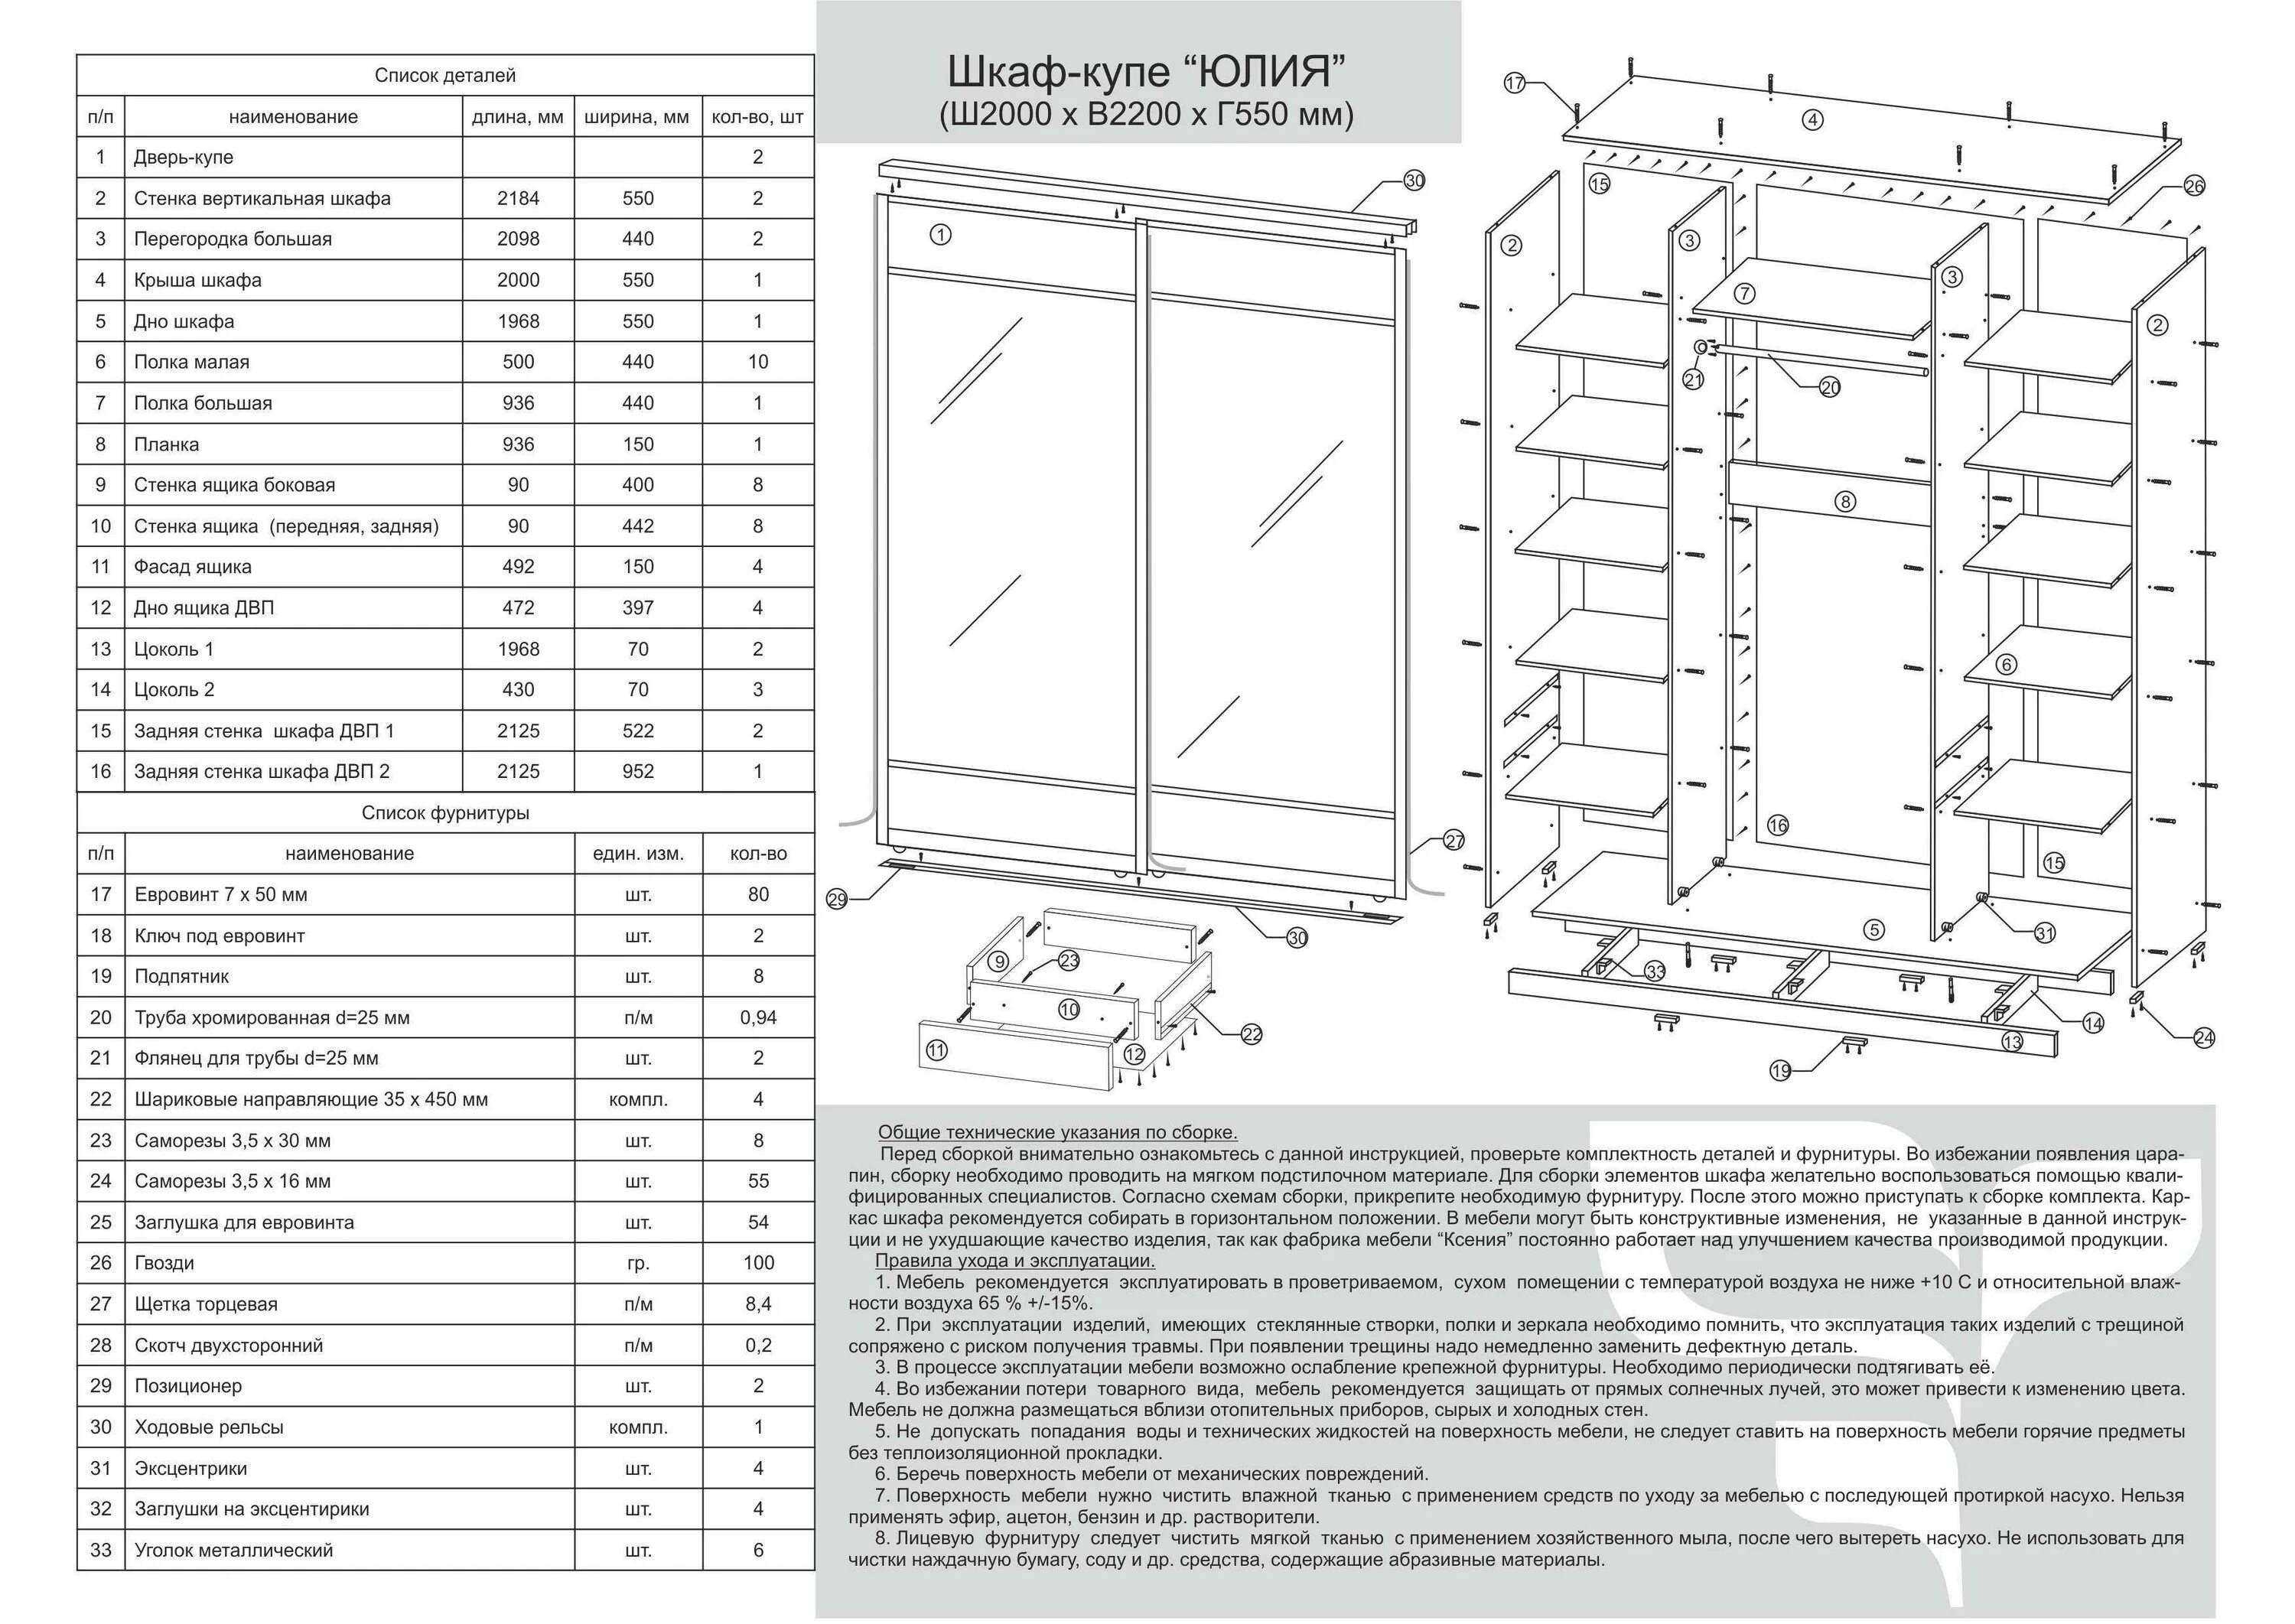 Пошаговая сборка шкафа. Шкаф-купе Версаль с 2-мя дверями схема сборки. Версаль 5 схема сборки шкаф. Шкаф Прайм е1 схема сборки.